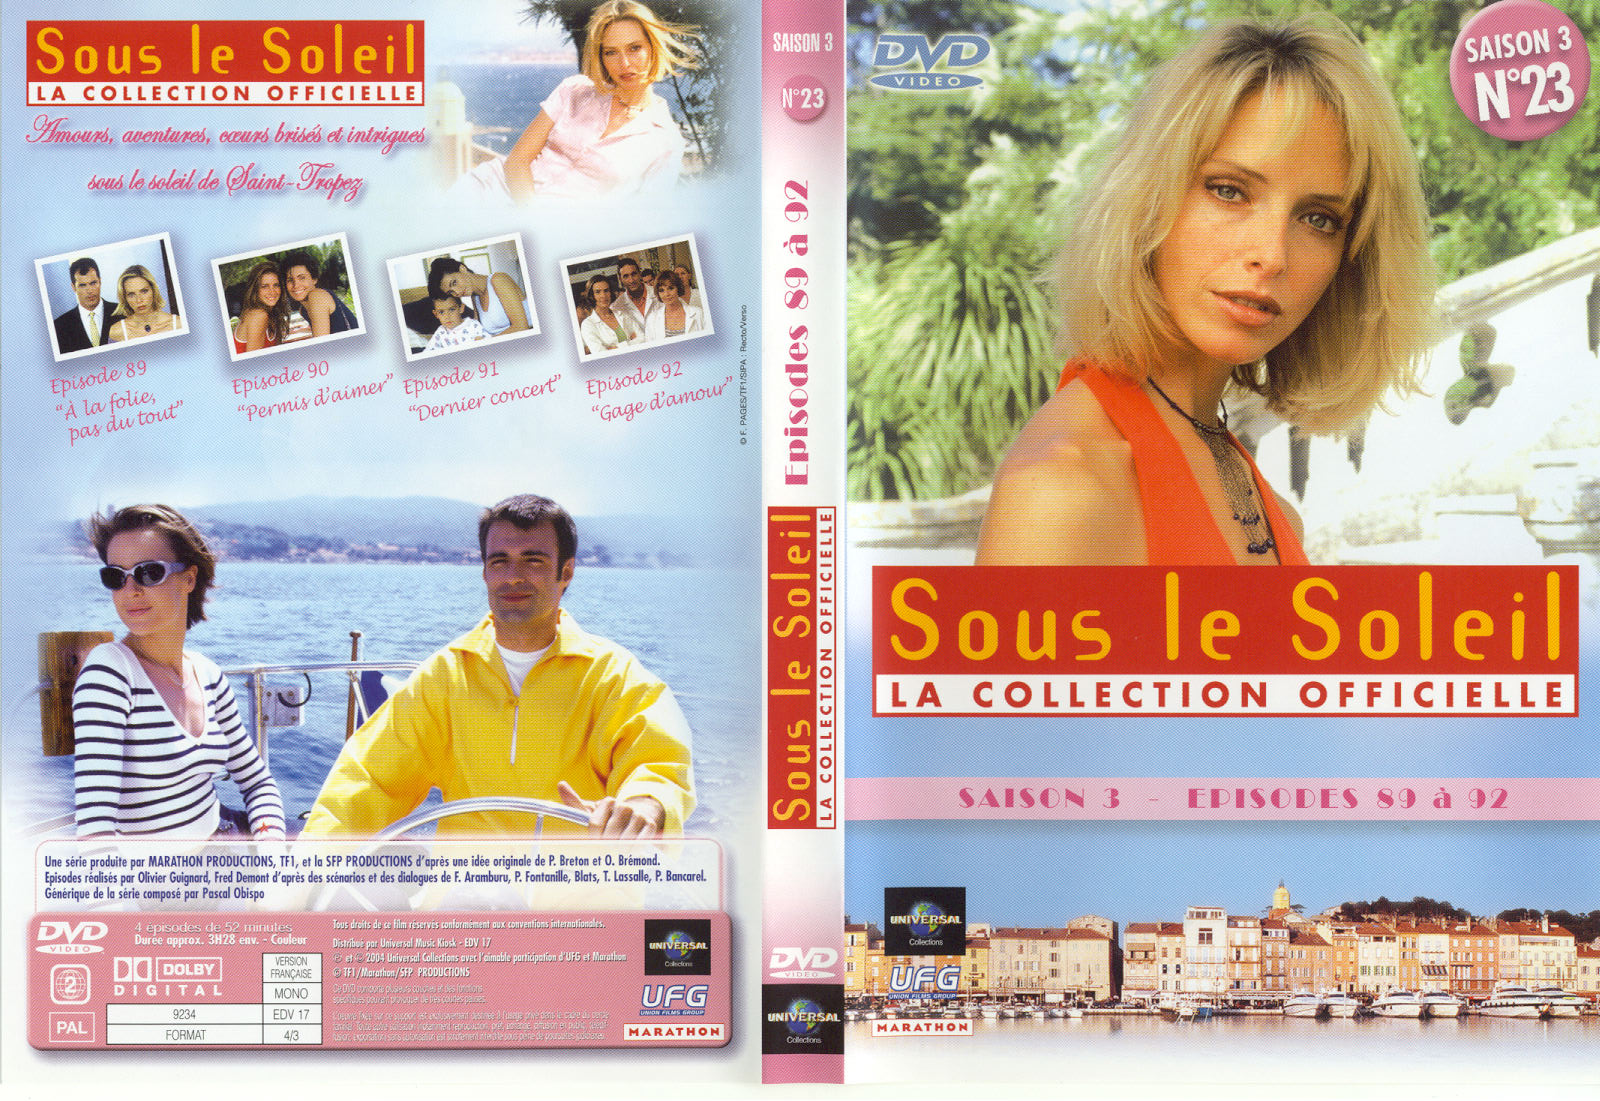 Jaquette DVD Sous le soleil saison 3 vol 23